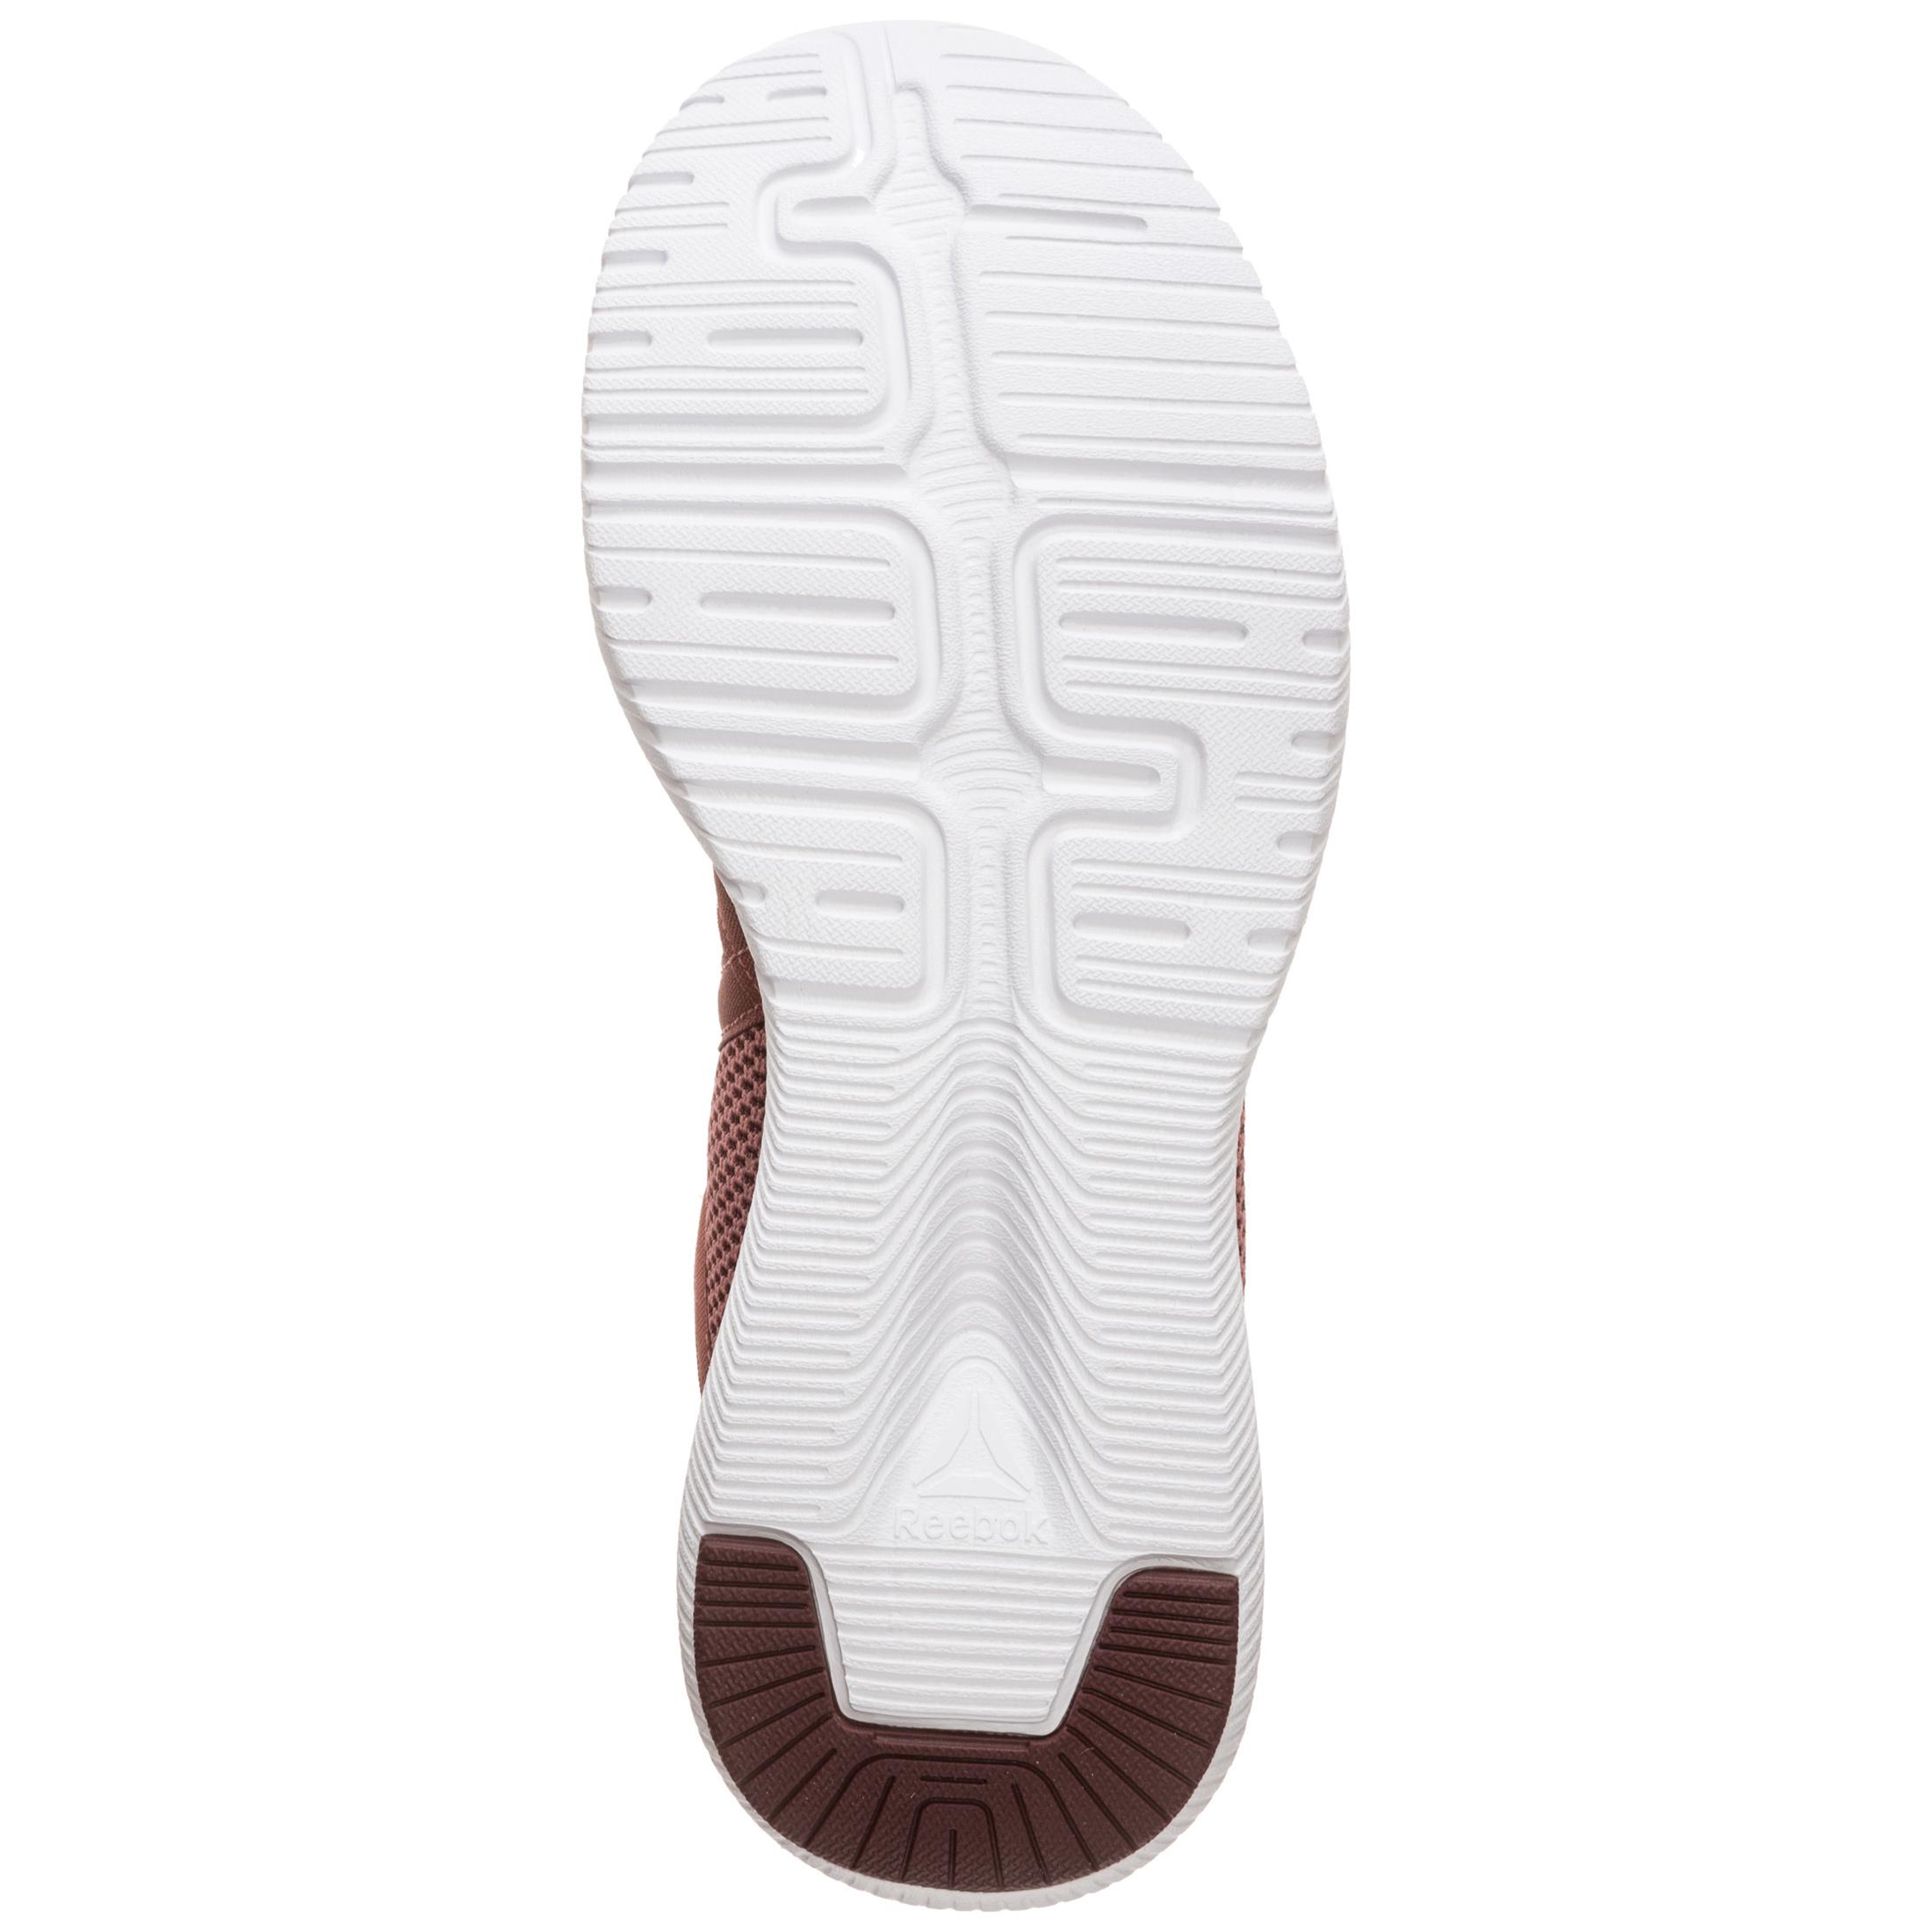 Schuhe Reebok Reago Essential CN5191 LavendarLilacWhite